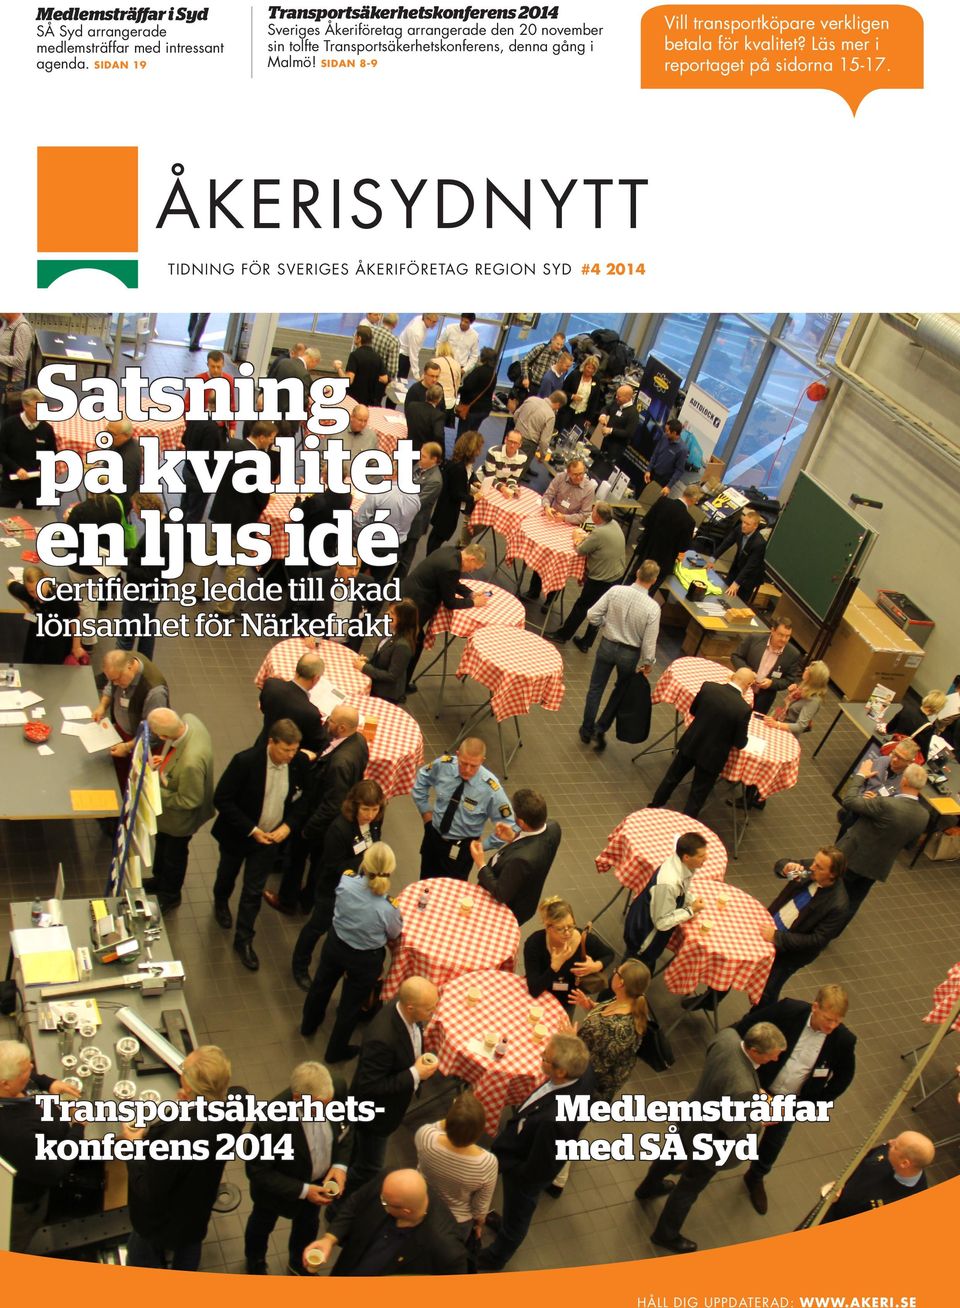 Sveriges Åkeriföretag arrangerade den 20 november sin tolfte Transportsäkerhetskonferens, denna gång i Malmö!